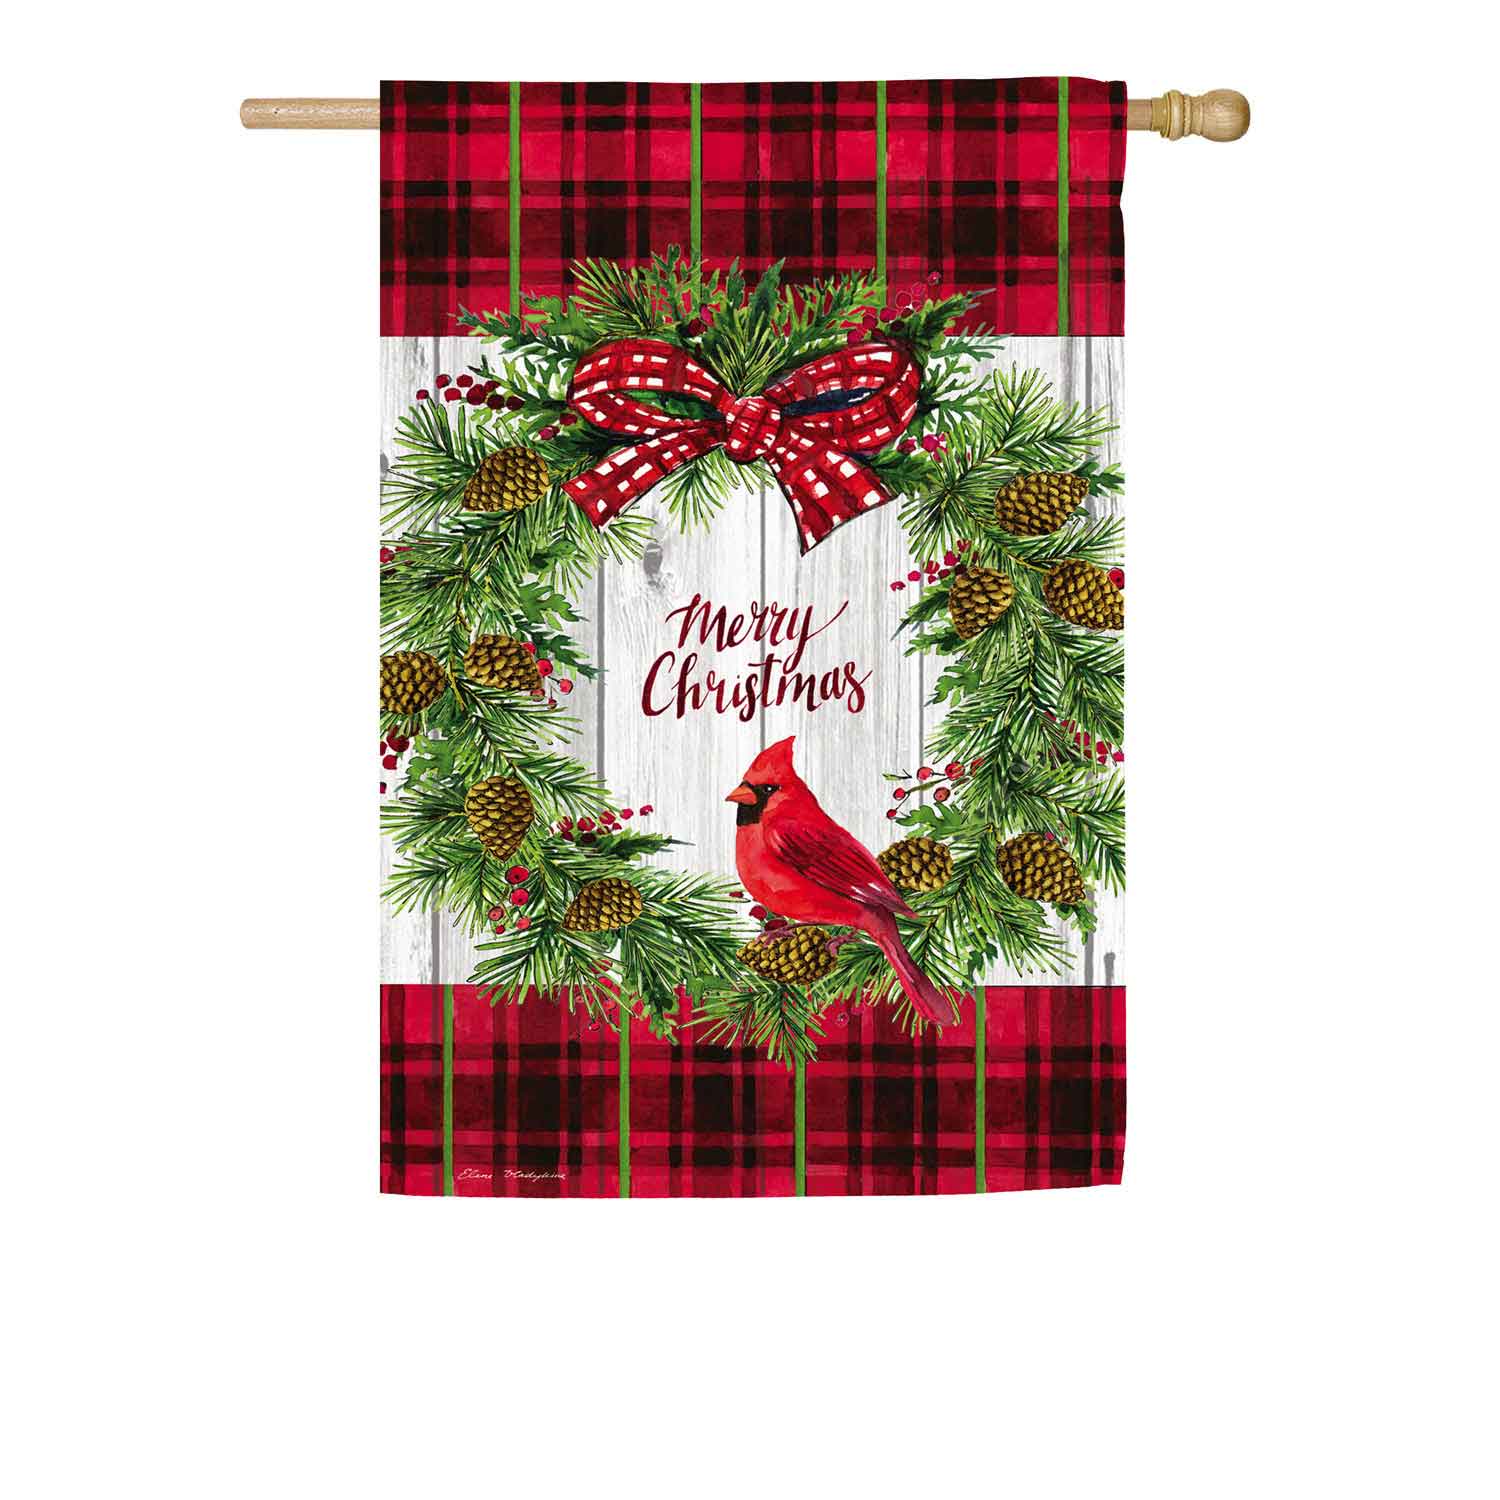 Christmas Cardinal Wreath House Textured Suede Flag